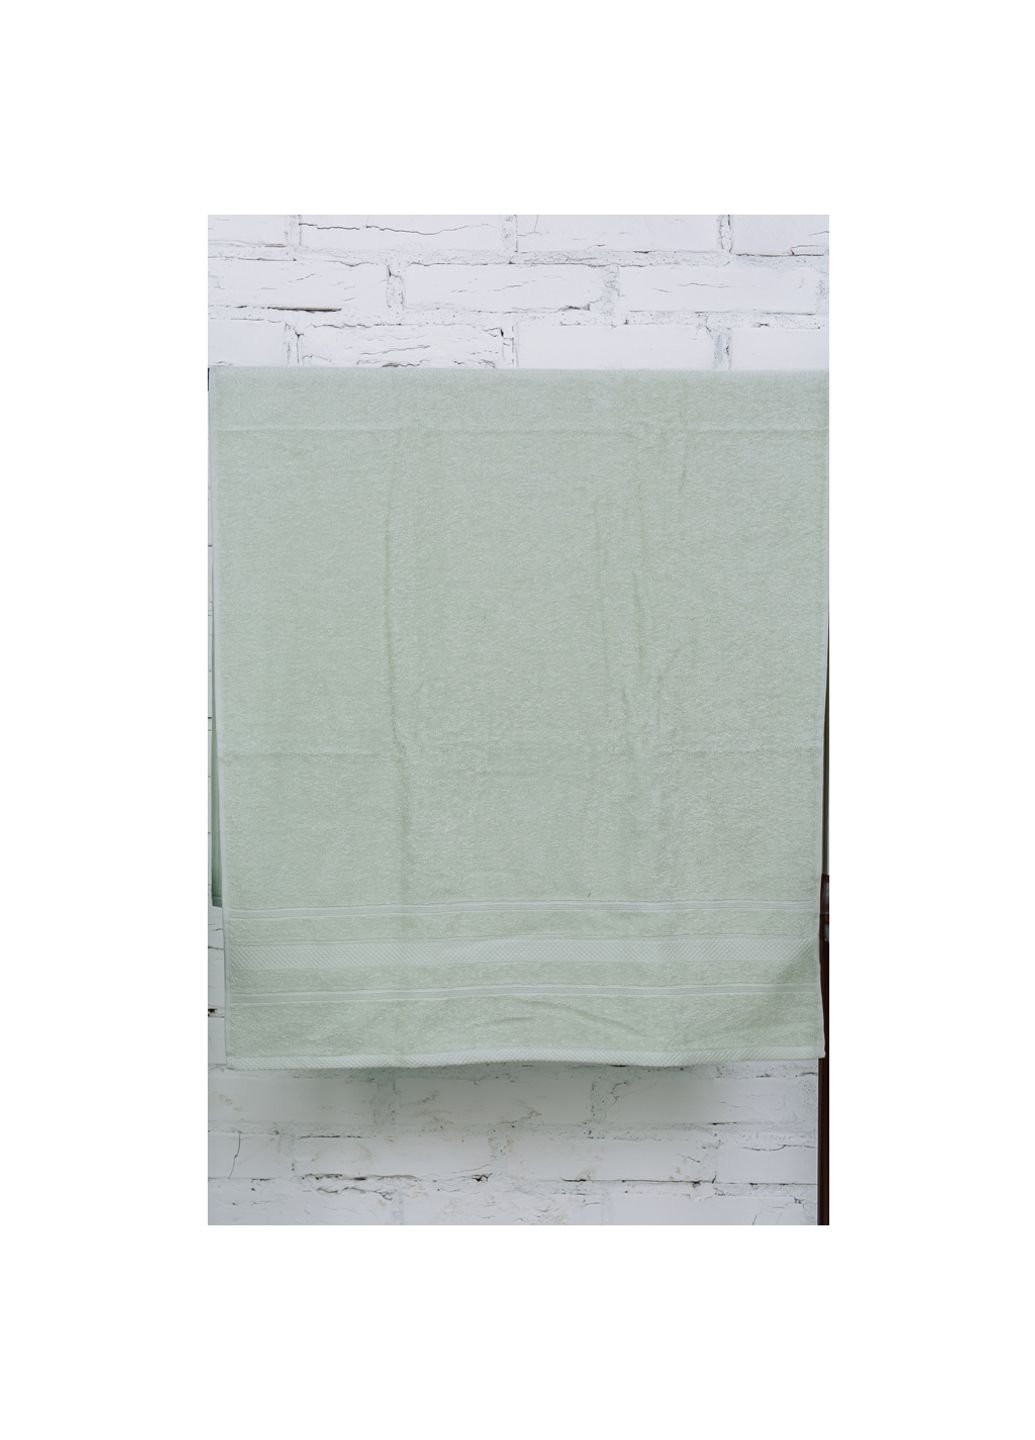 Mirson полотенце банное №5008 softness menthol 100x150 см (2200003181265) мятный производство - Украина